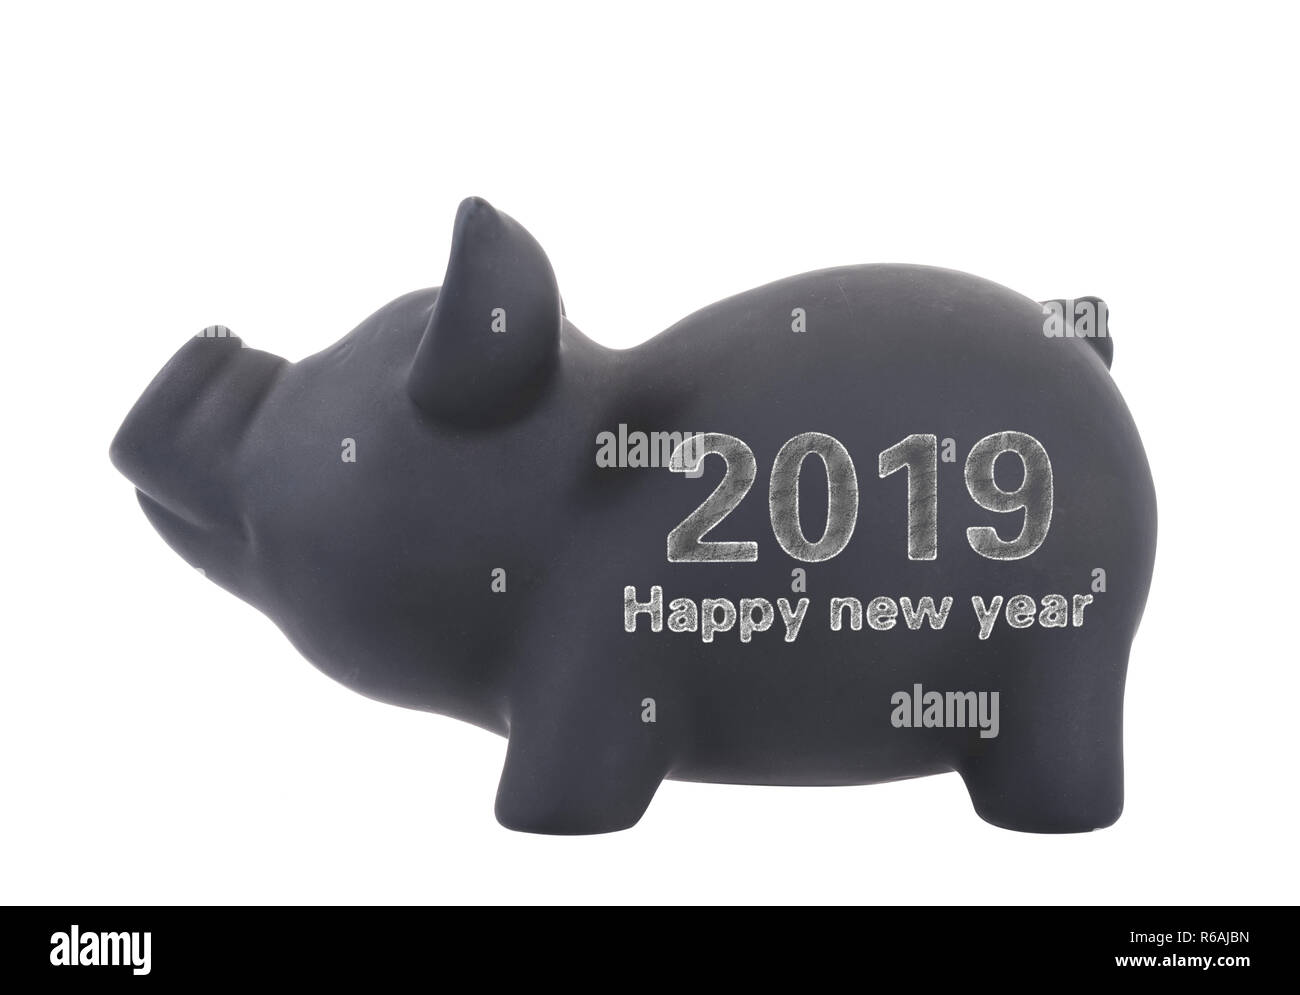 Il 2019 è l'anno del maiale,parola felice anno nuovo scritto con gesso su una ceramica nera salvadanaio moneta contenitore isolato su sfondo bianco Foto Stock